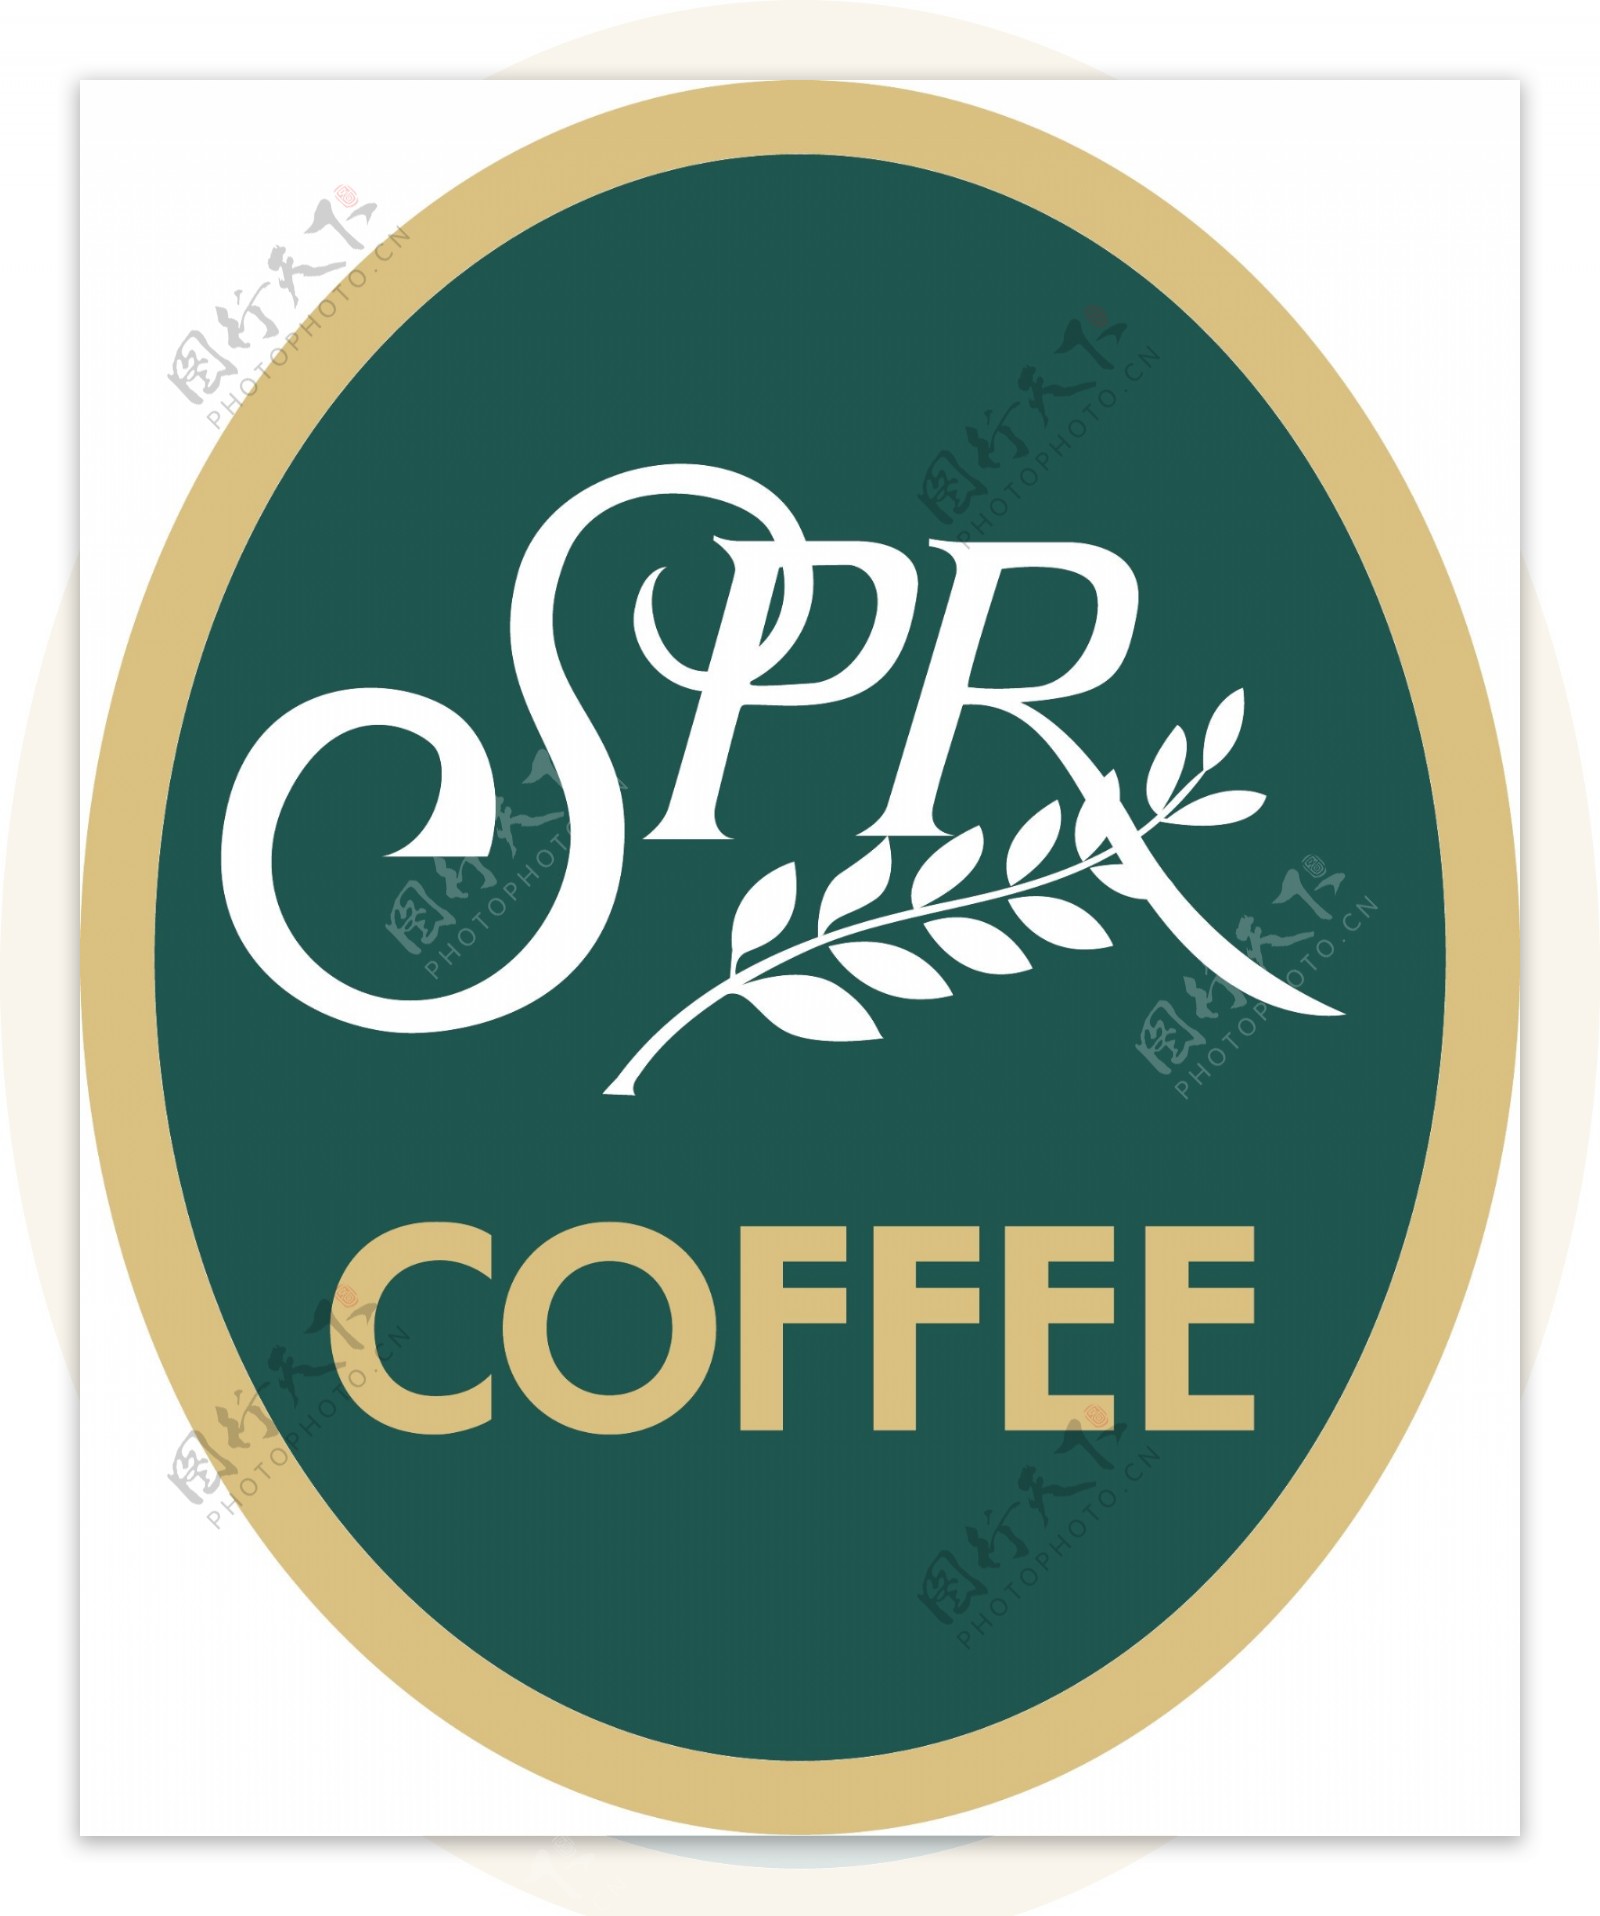 咖啡sprcoffee标志图片